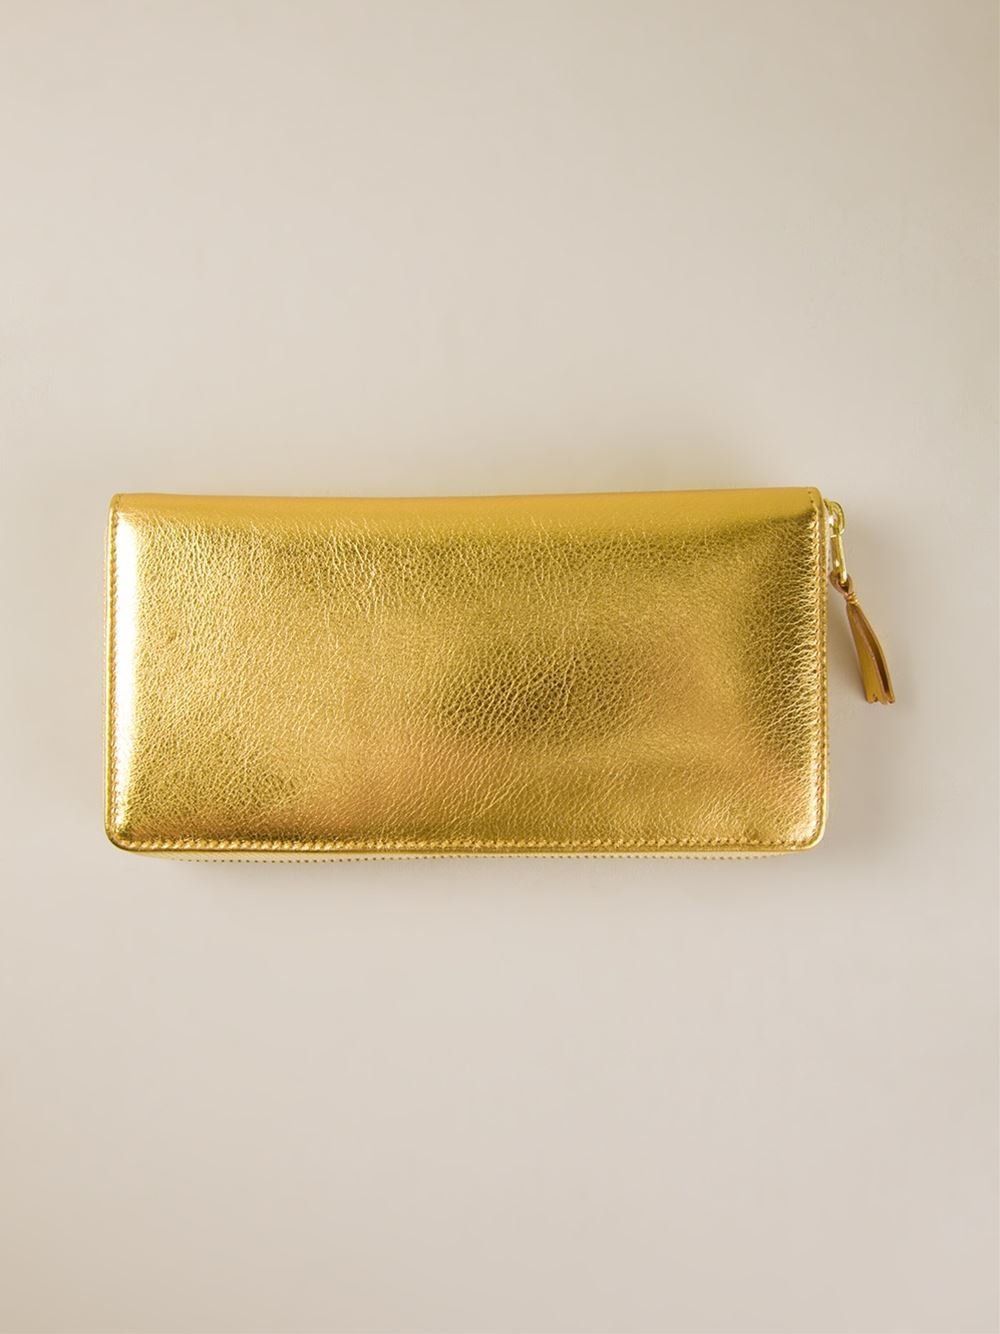 cdg-wallet-SA0110G-gold